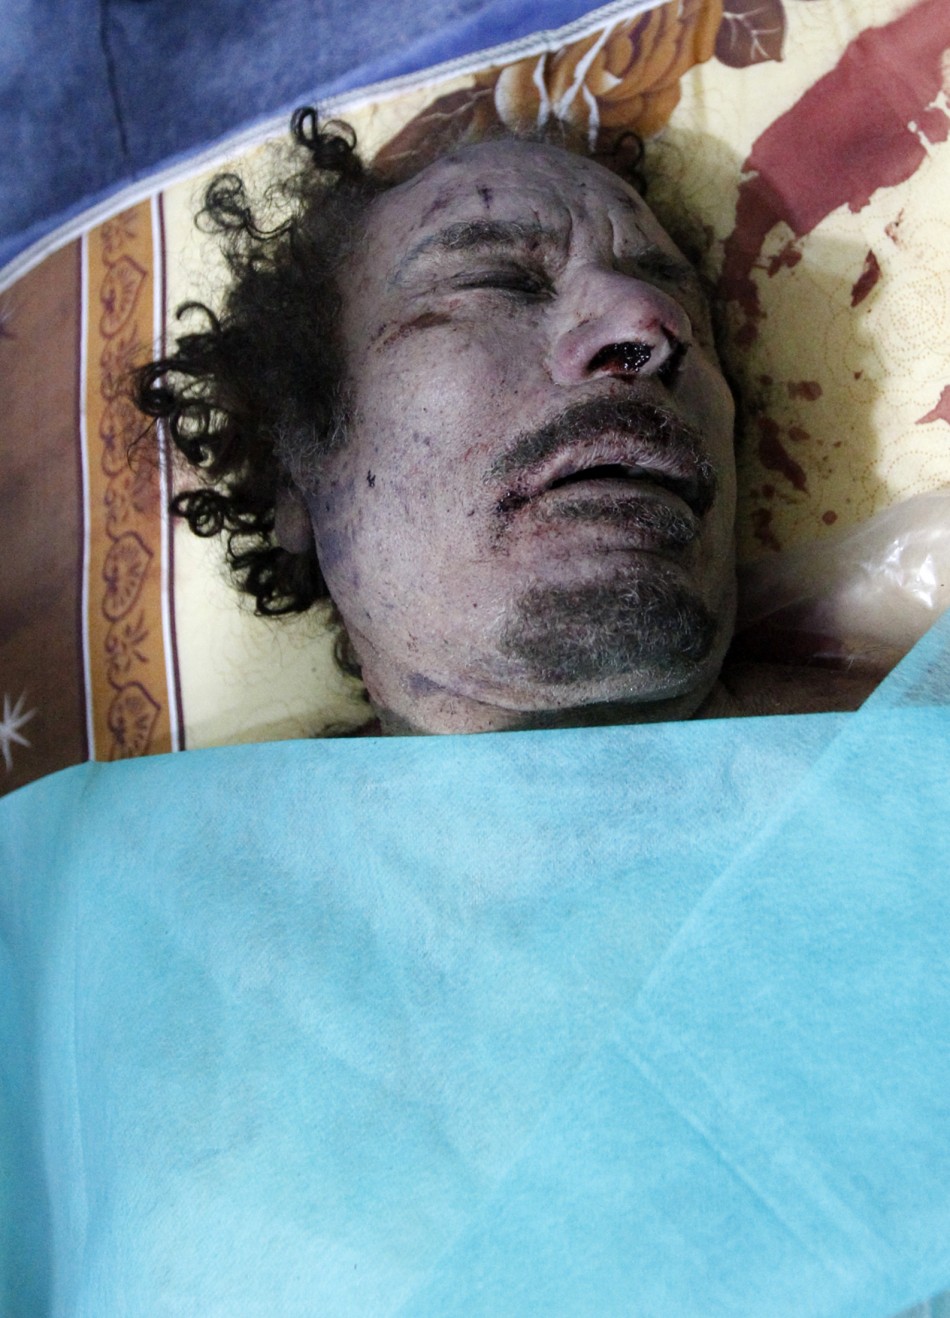 Muammar Gaddafi Killed Dead Body Photos Released